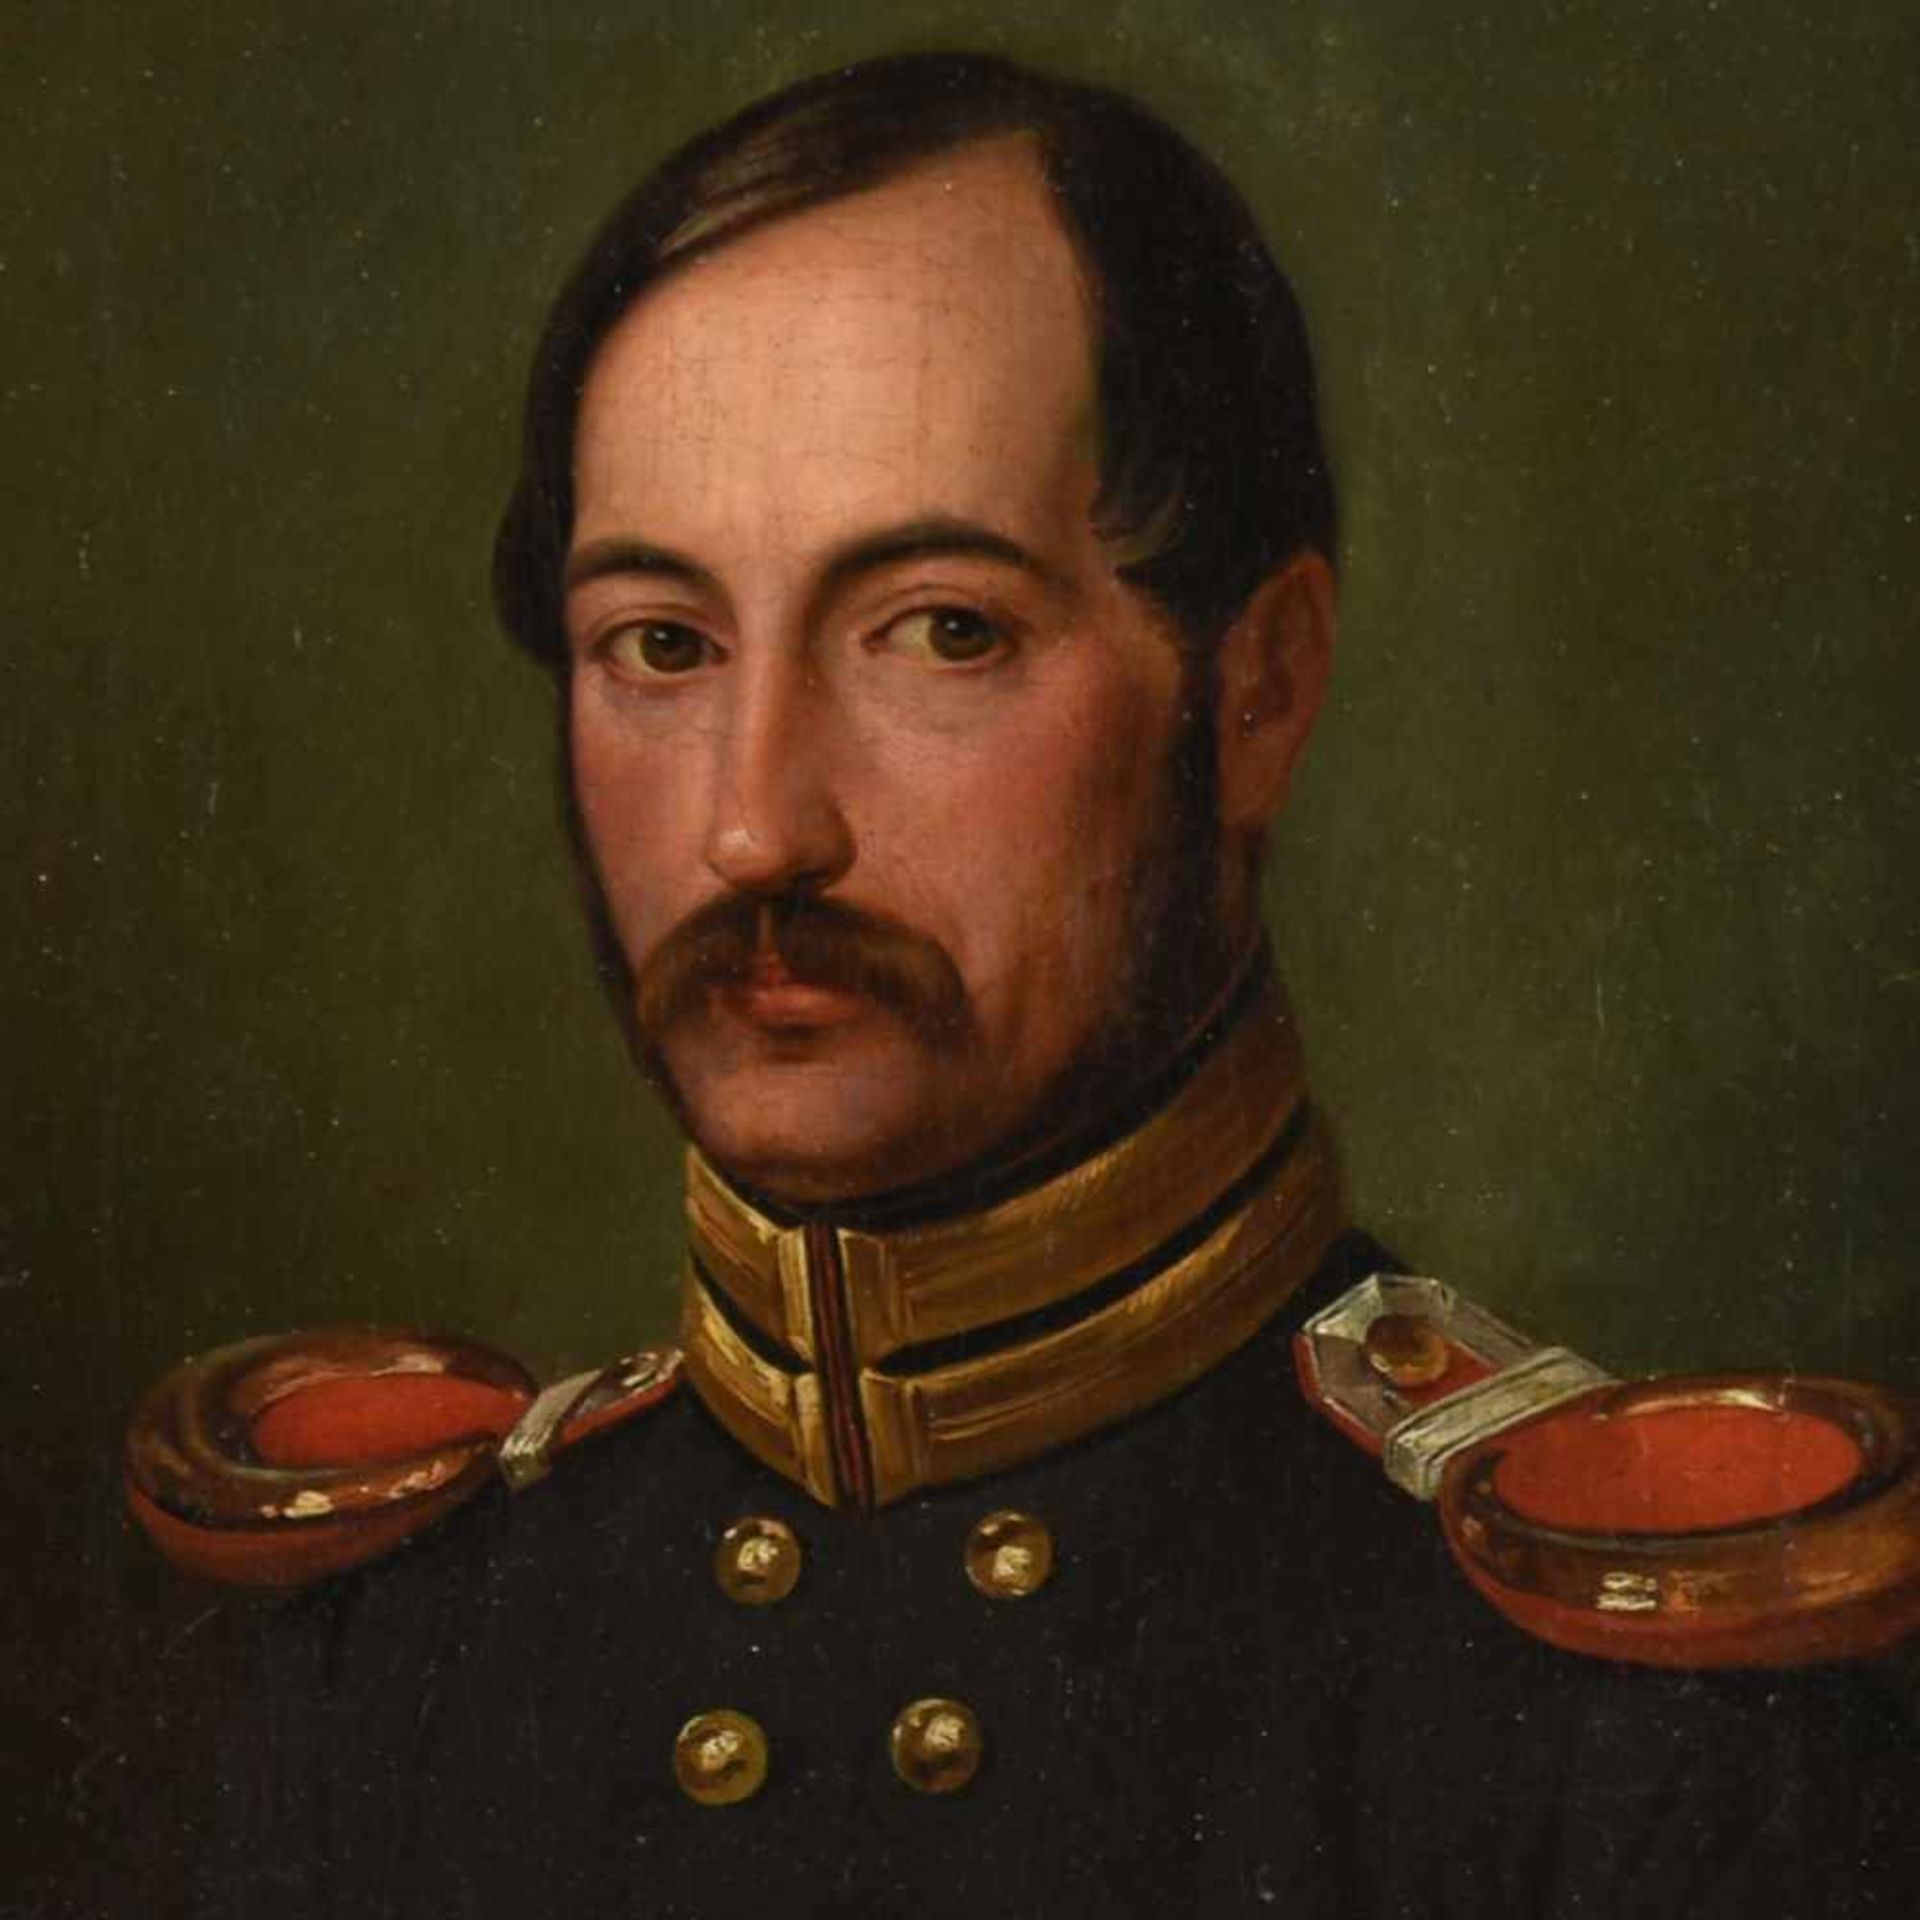 Unbekannter Porträtist Öl/Lwd., Porträt eines preußischen Offiziers, Rahmung später ergänzt, ca.